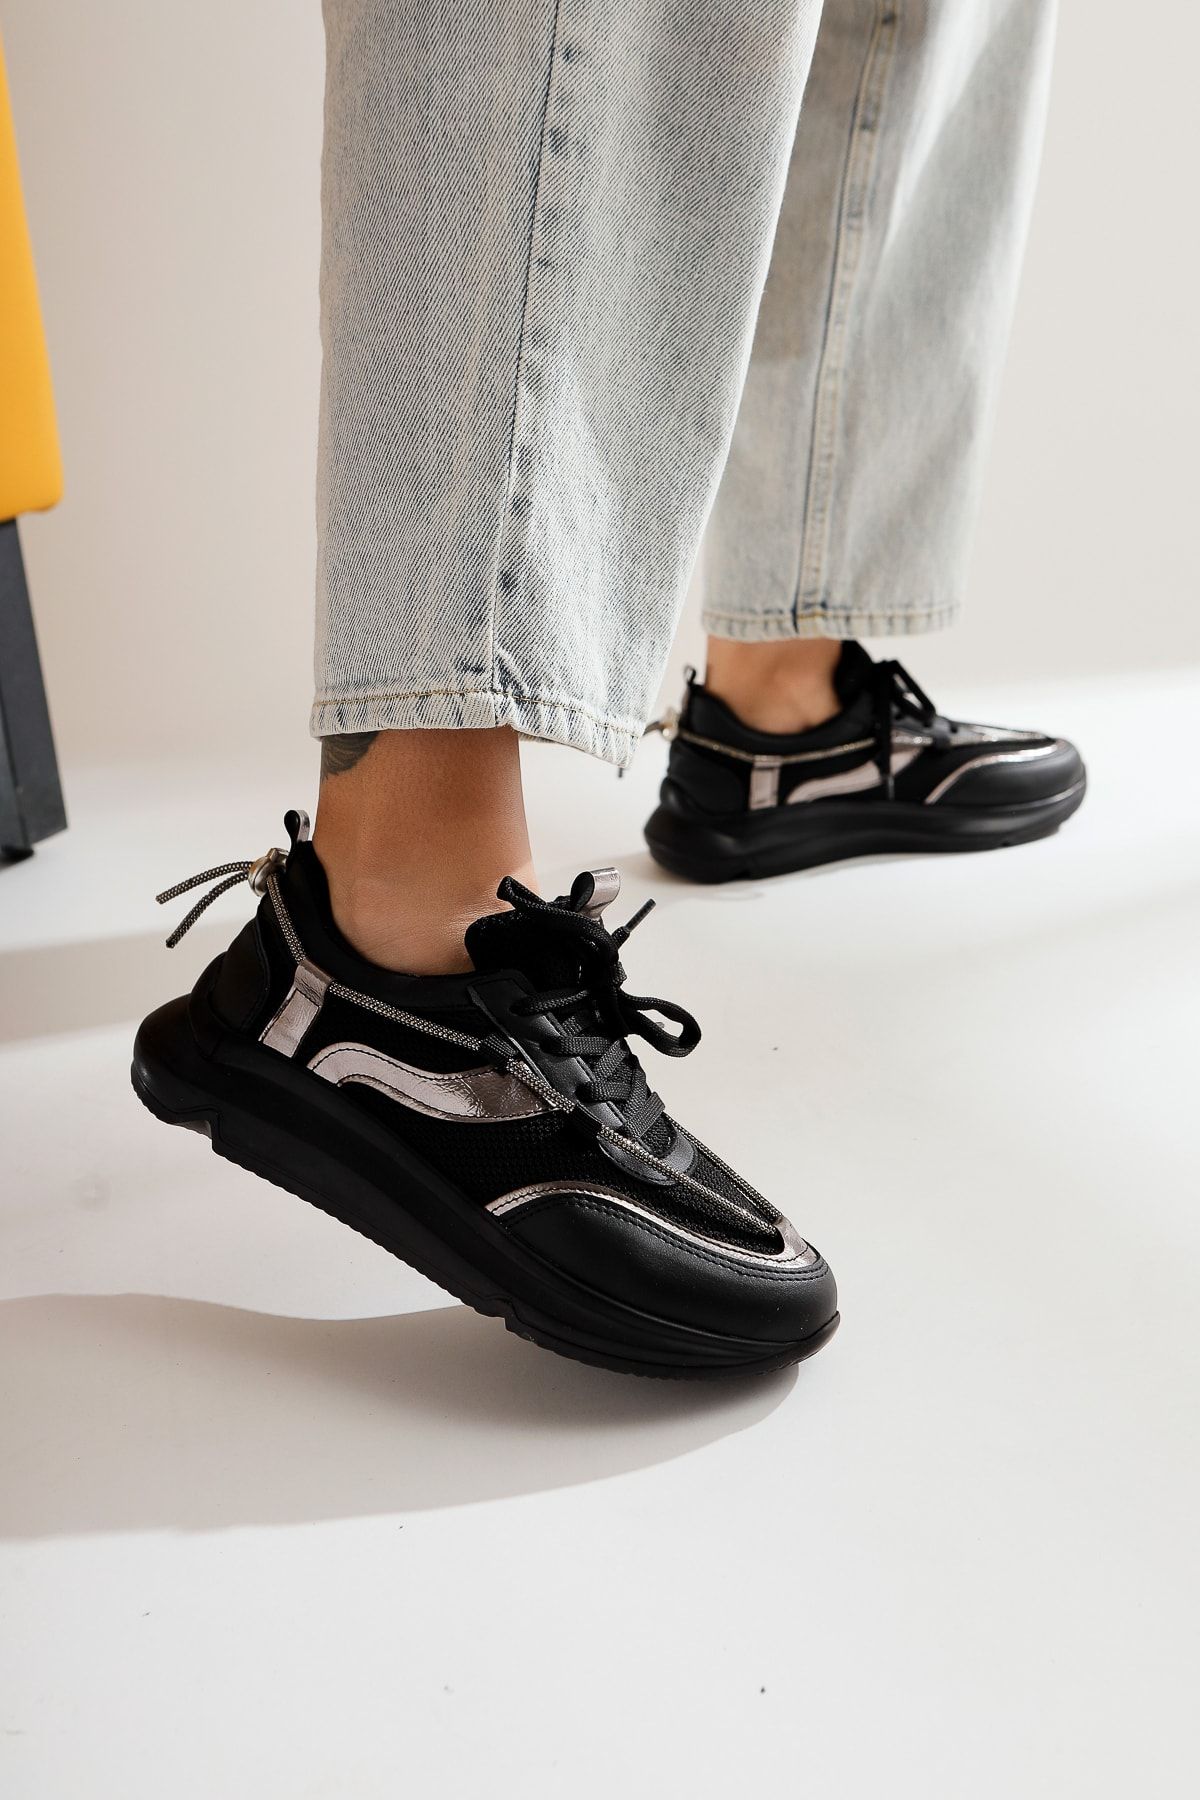 Limoya Luann Siyah Taş Detaylı Bağcıklı Sneakers Spor Ayakkabı